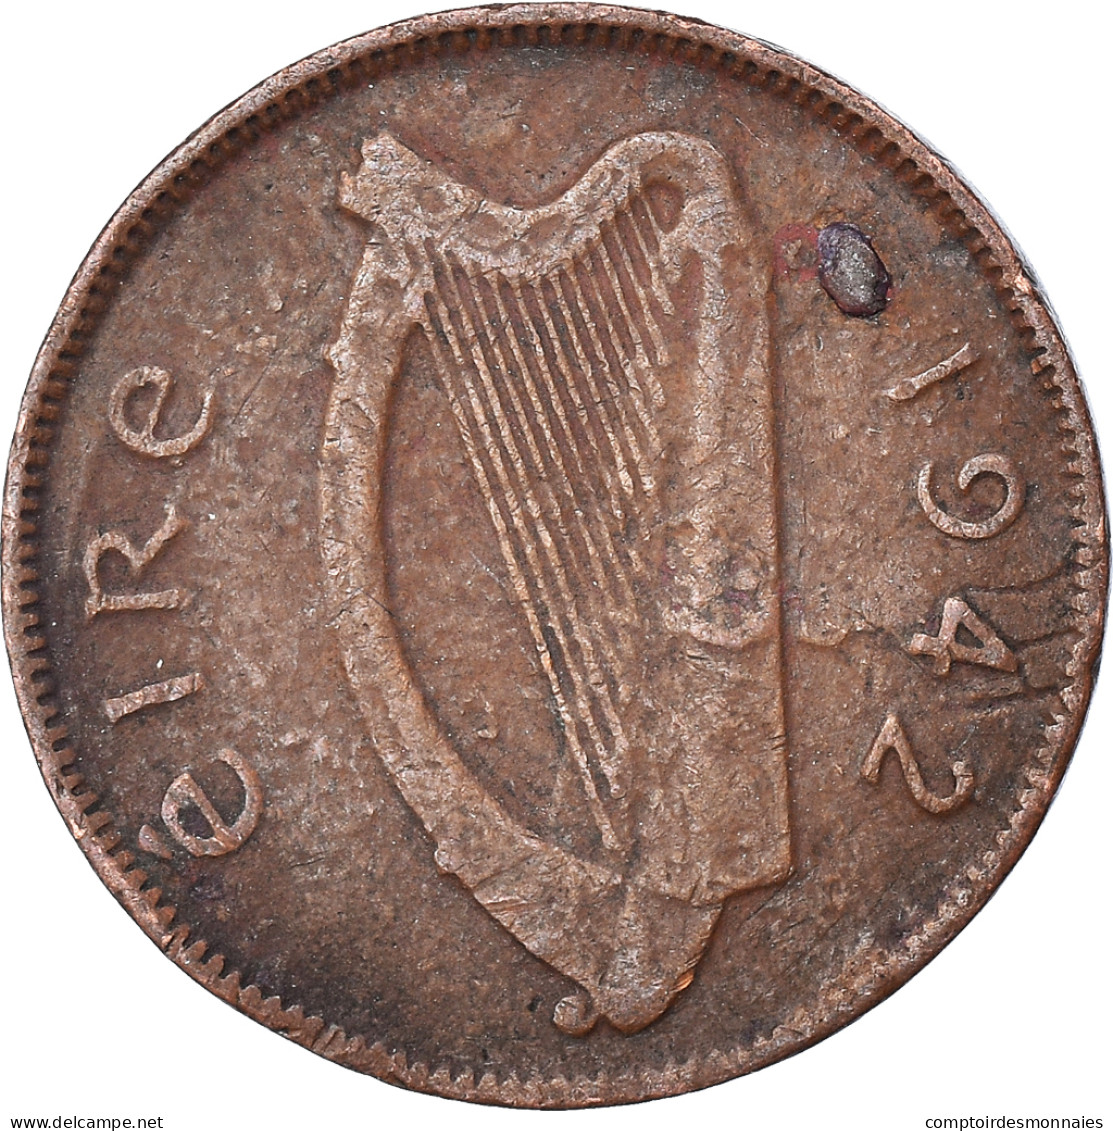 Monnaie, République D'Irlande, 1/2 Penny, 1942 - Irlande